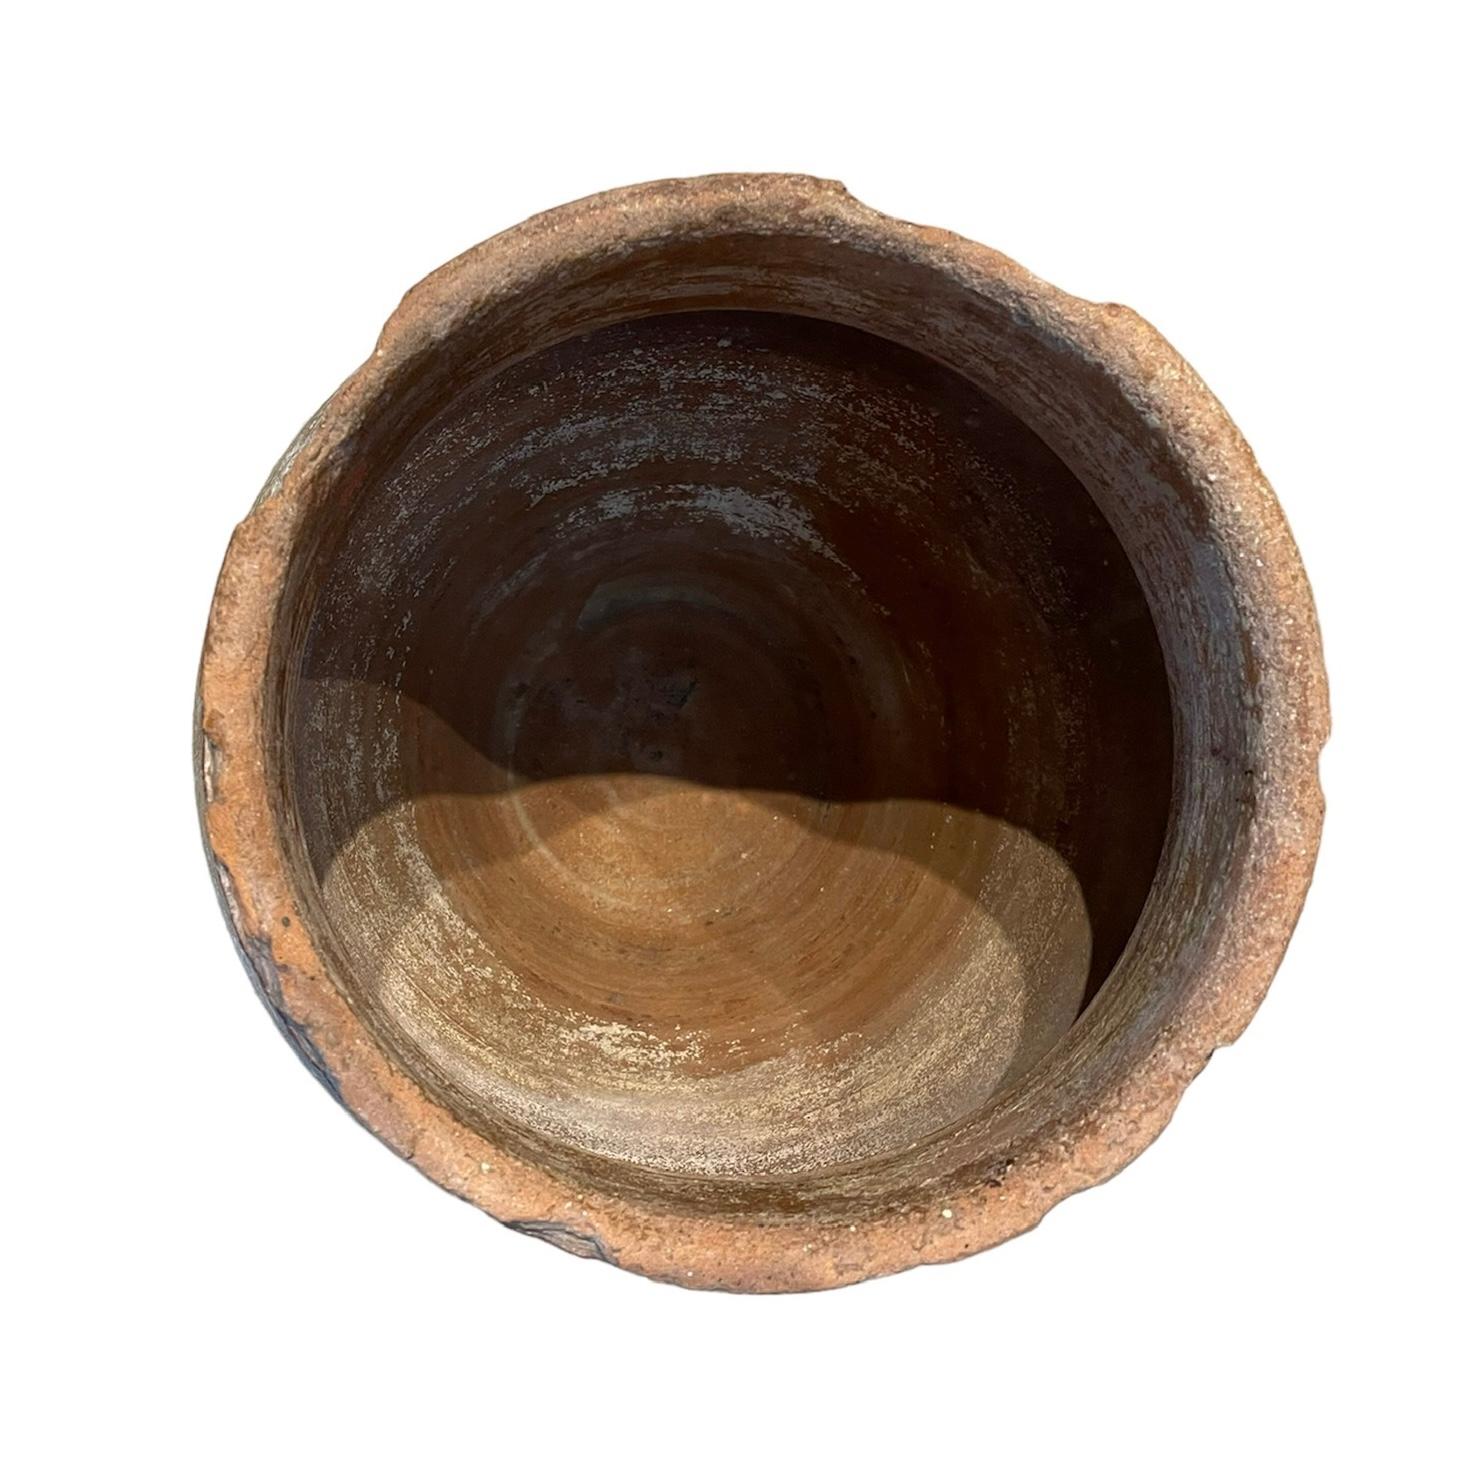 Dies ist eine kleine spanische Amphora aus Terrakotta aus dem 19. Es zeigt eine ziegelfarbene, breite Amphora, die am oberen Rand mit Rüschen verziert ist. Die Amphoren werden zur Aufbewahrung und zum Transport von Wasser, Wein oder Öl verwendet.